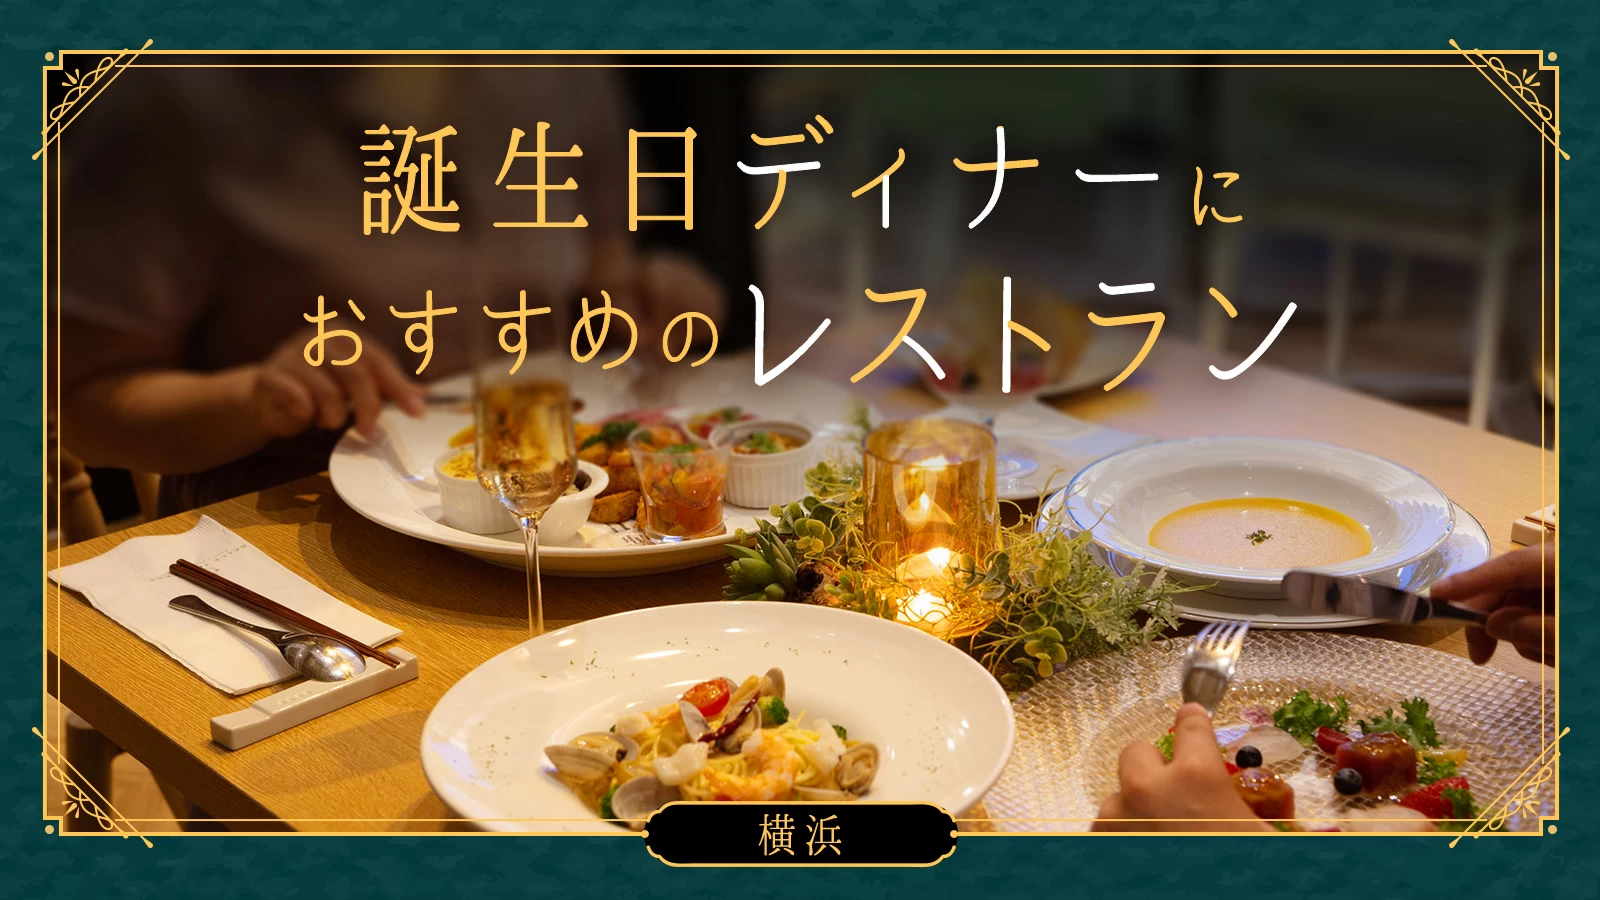 【横浜】誕生日ディナーにおすすめのレストラン9選